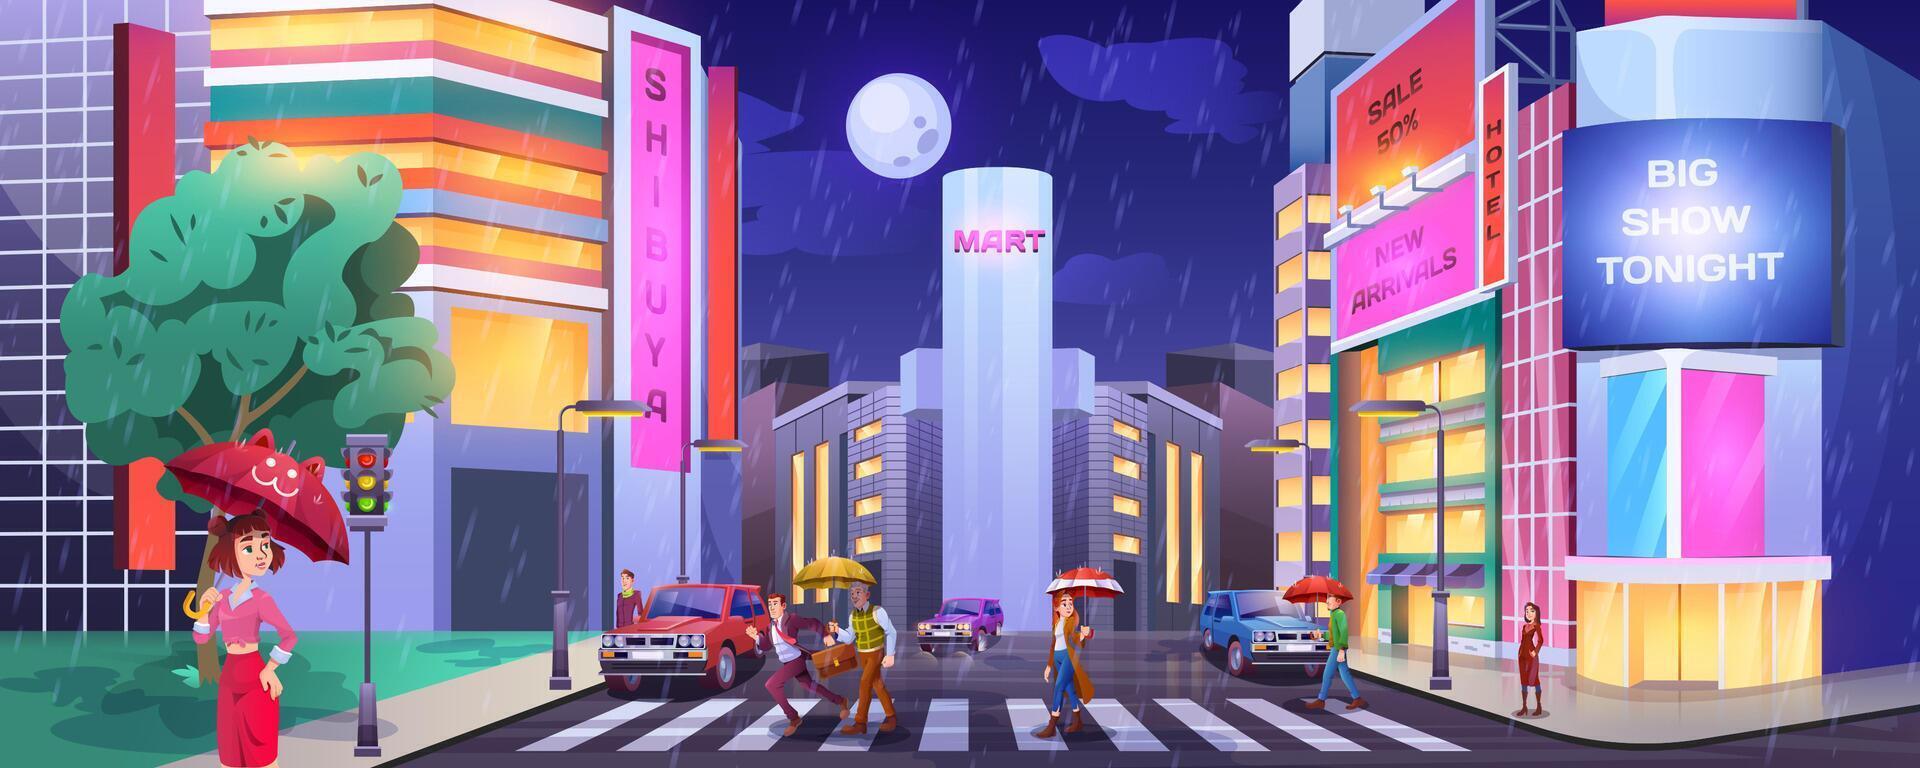 regn i mörk stad. paddlar med paraplyer korsning väg. människor på övergångsställe med bilar. våt och regnig väder i natt stad tecknad serie med hotell, butiker eller Kafé upplyst byggnader fasader. vektor